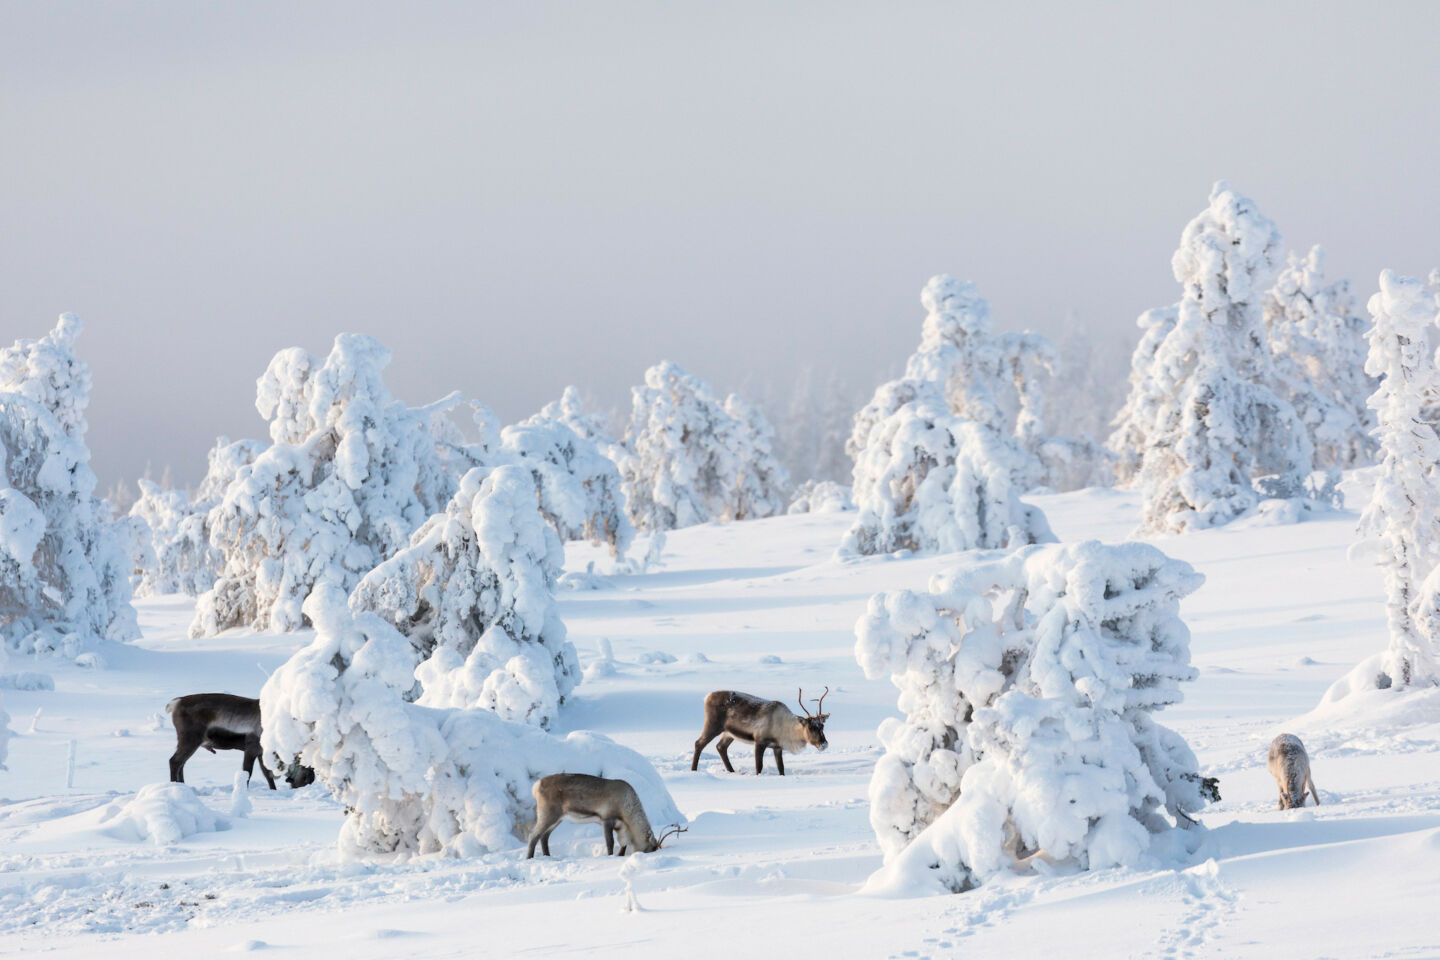 Reindeer & snow-crowned trees in Kittilä, Finland in winter